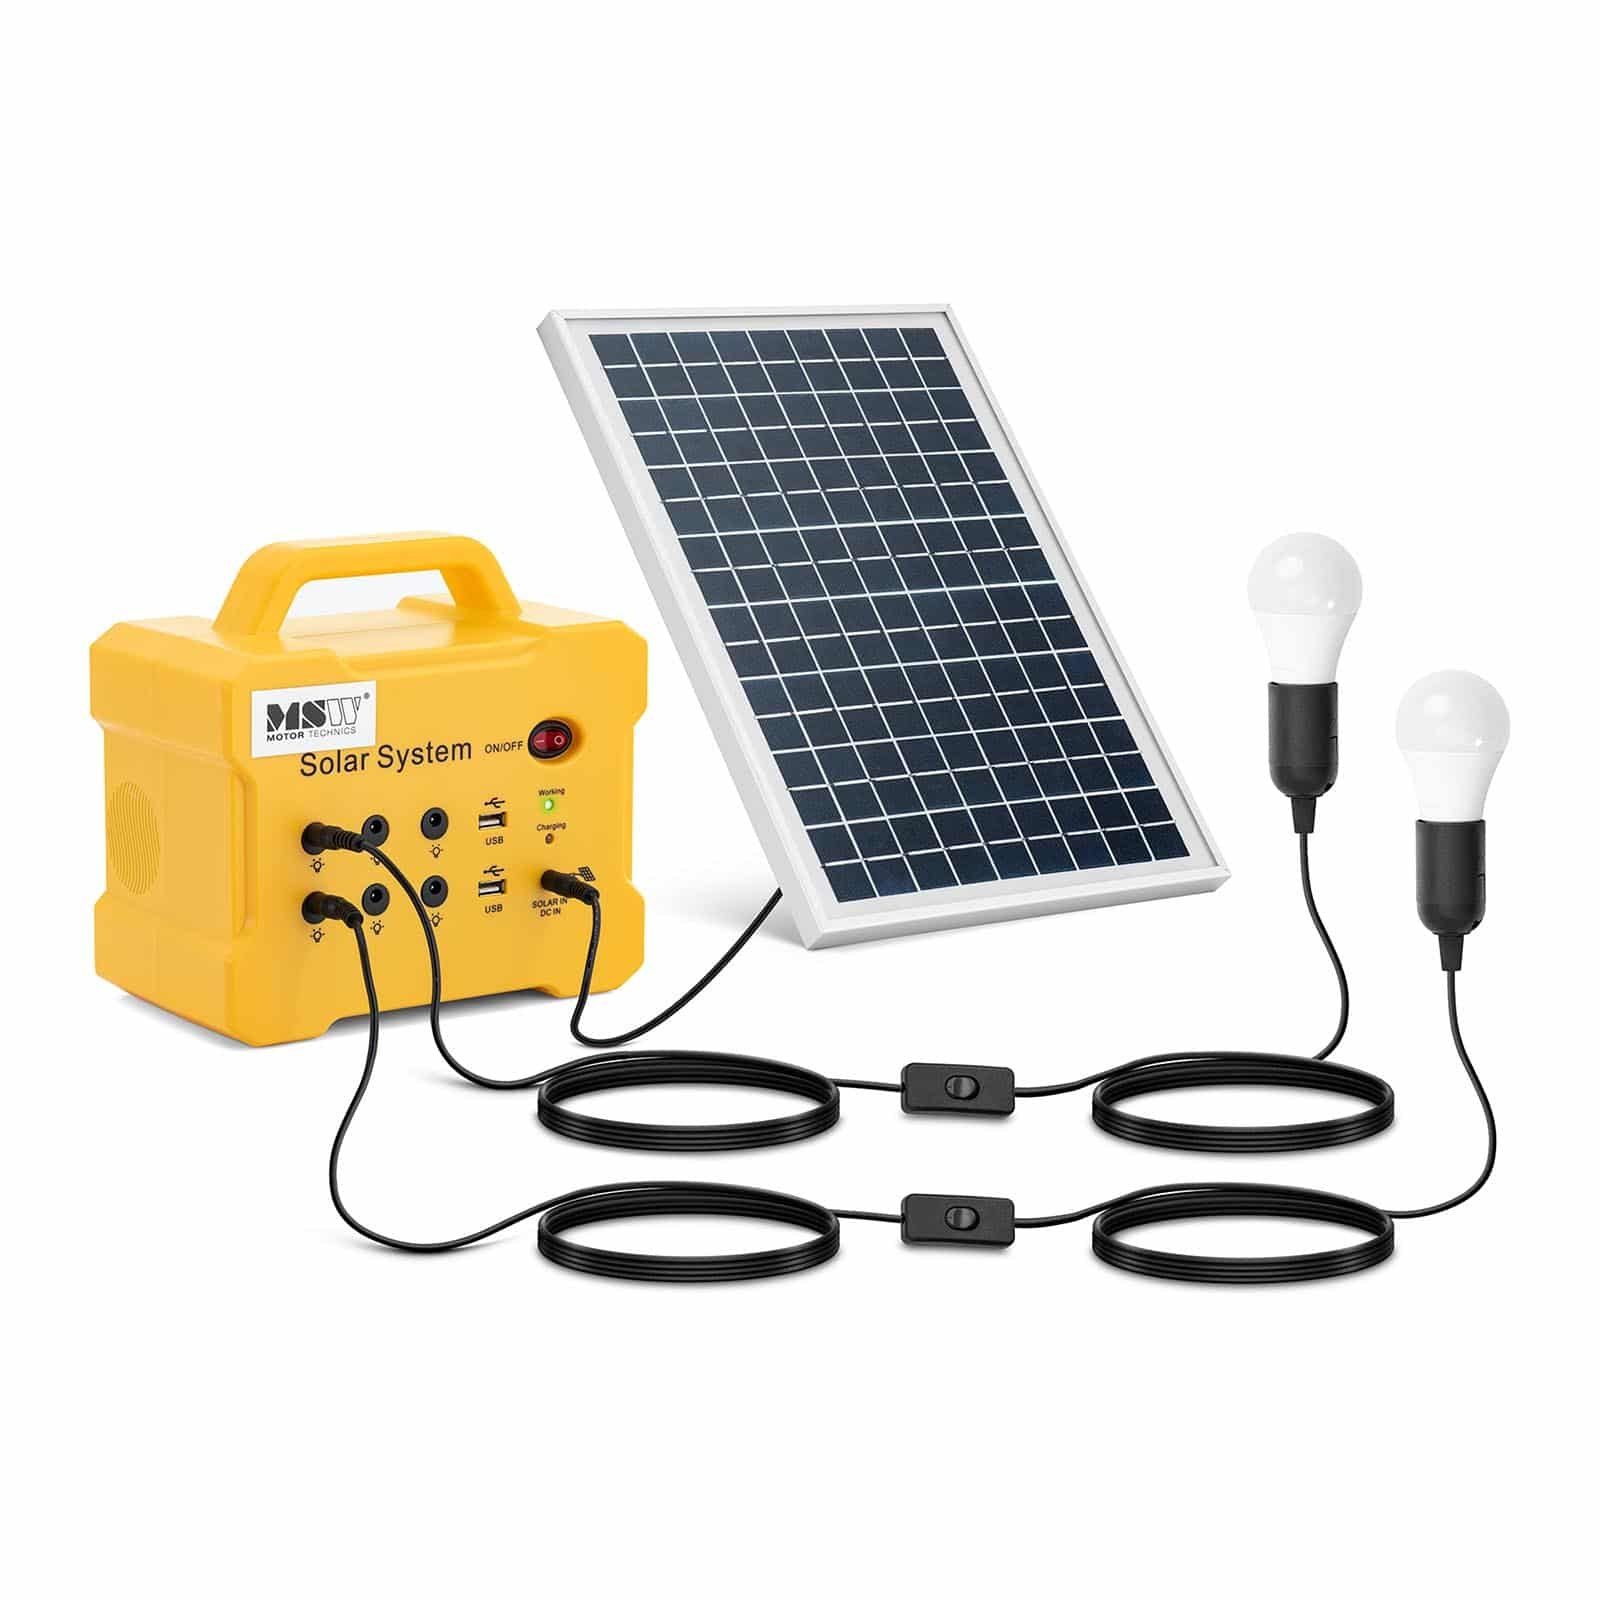 MSW Solarladeregler Powerstation mit Solarpanel 10 W 2 LED-Leuchten 6 x 12 V (DC) + 2 x